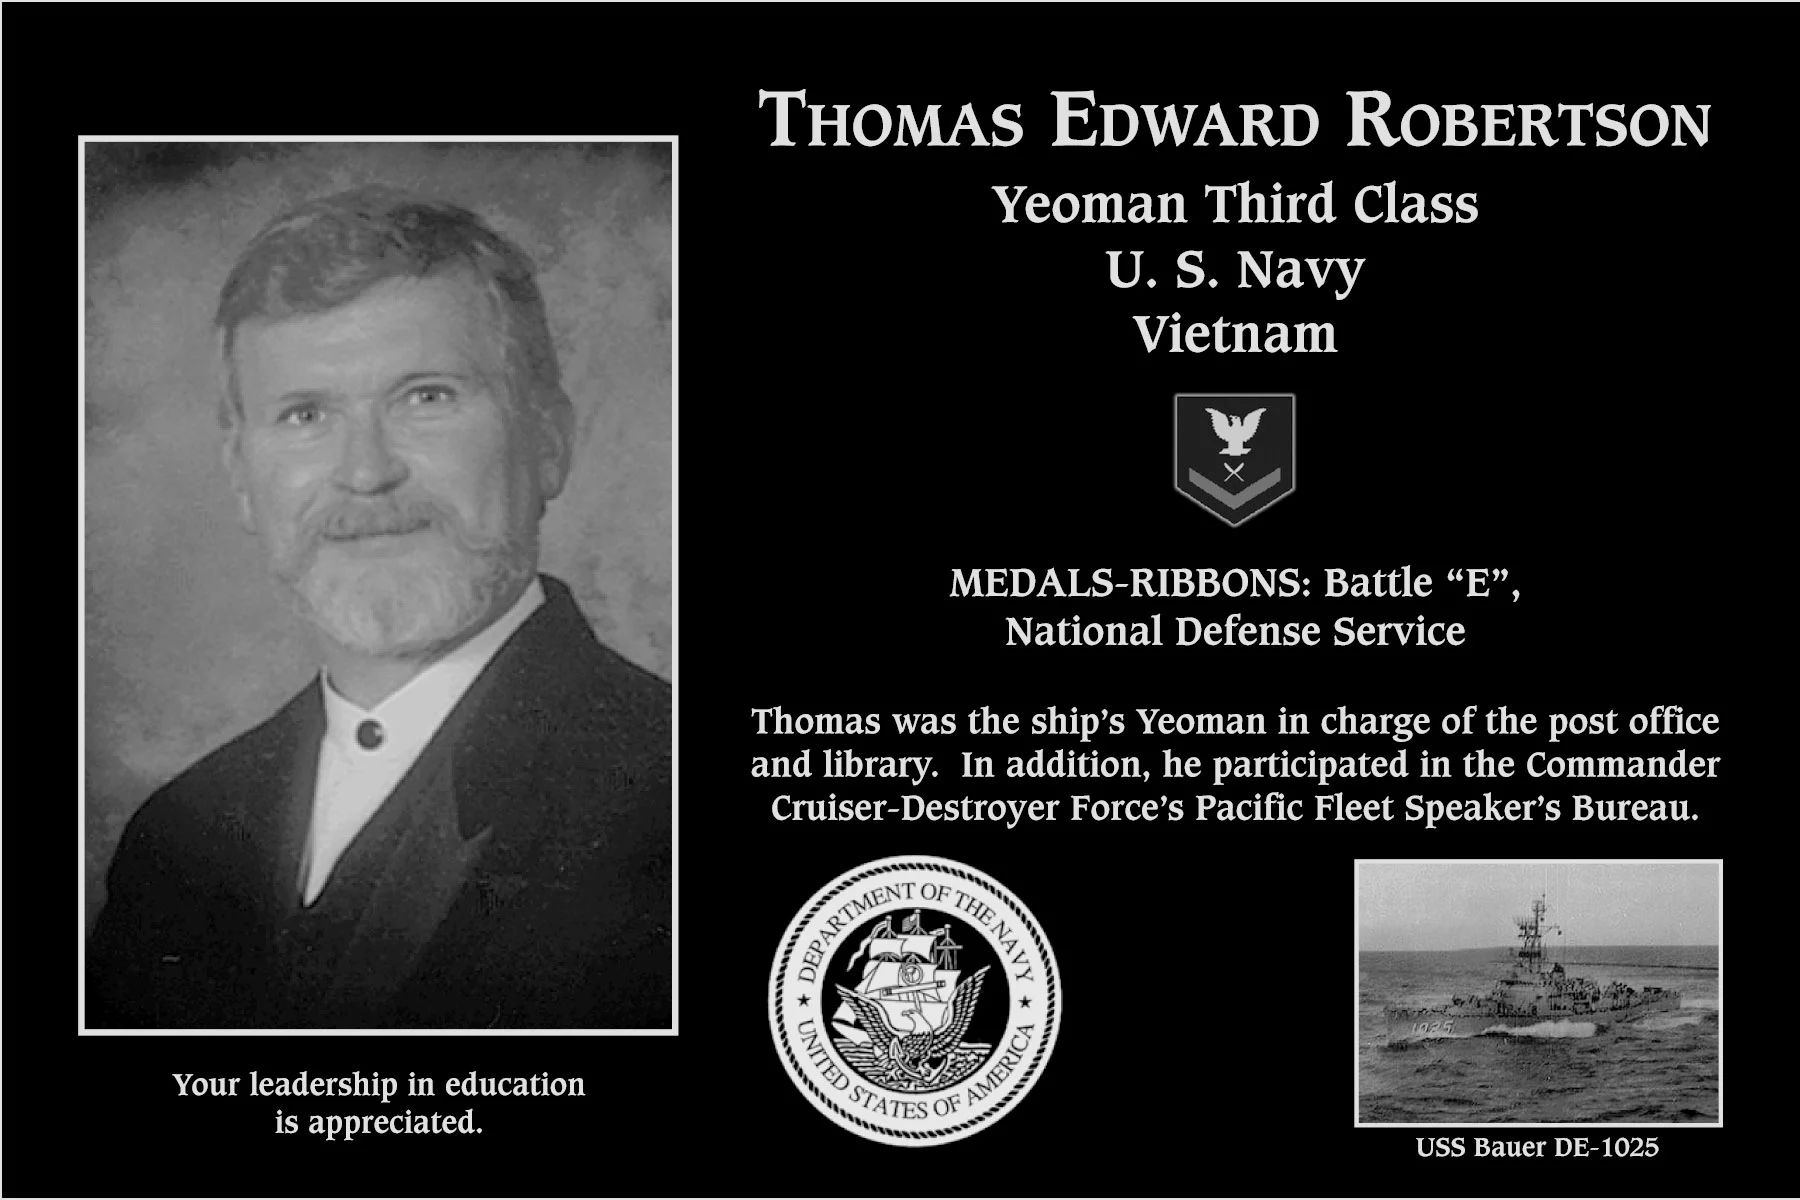 Thomas Edward Robertson